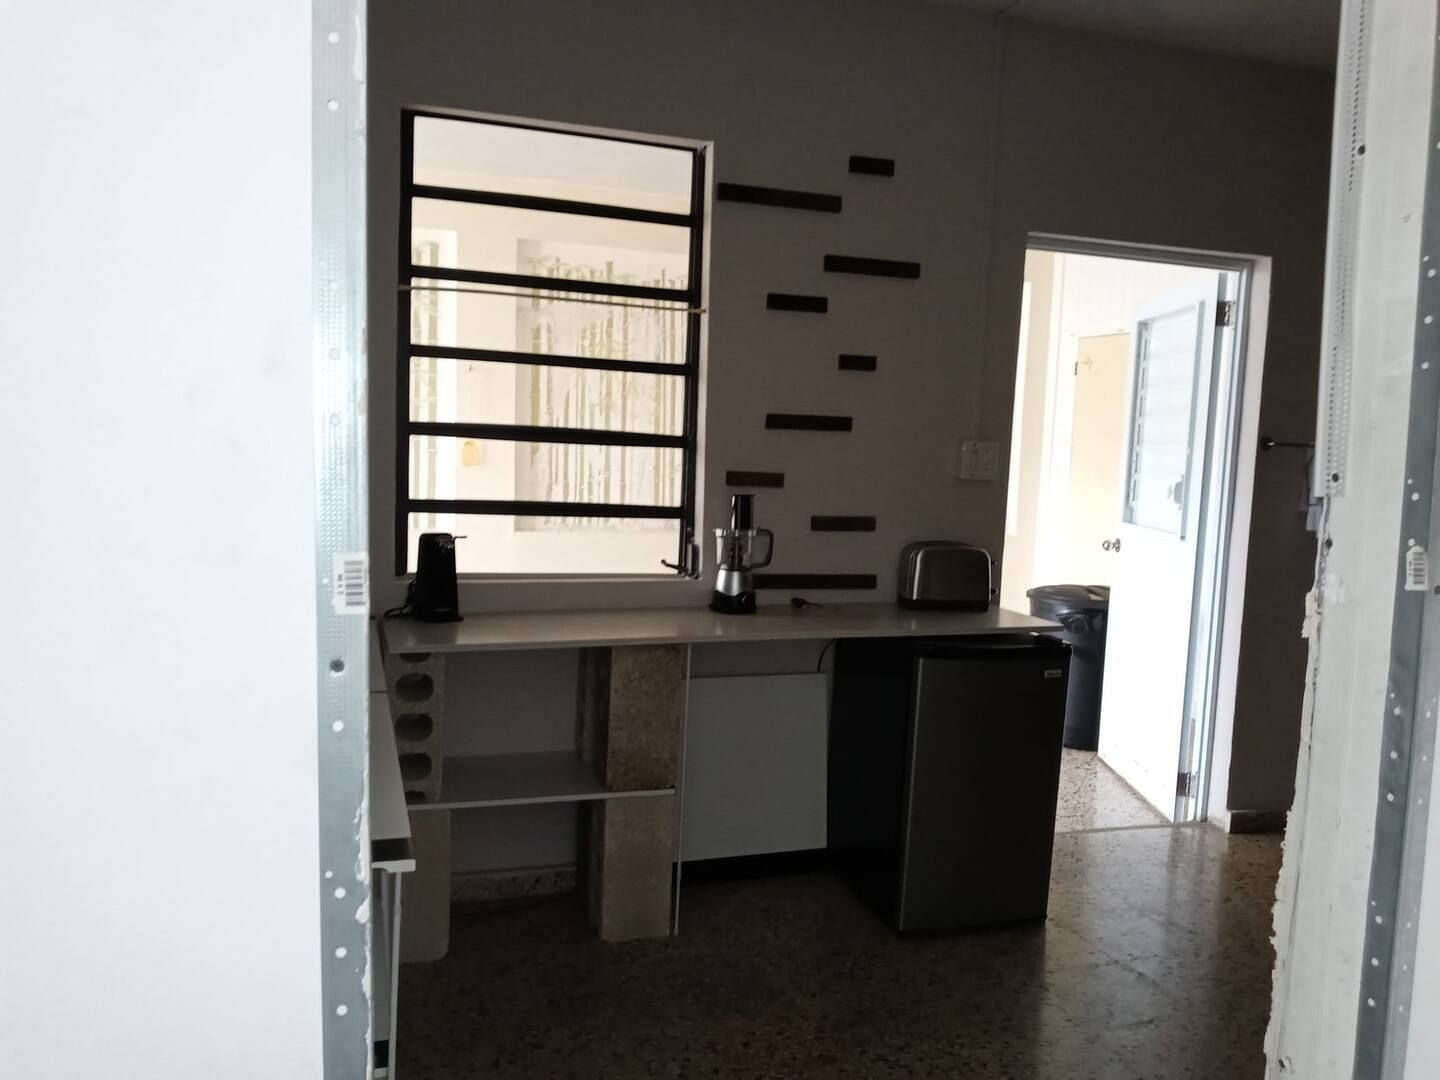 JWguest Apartment at San Juan, San Juan | LasLomas 4B Bunkers Bedroom #2 | Jwbnb no brobnb 7